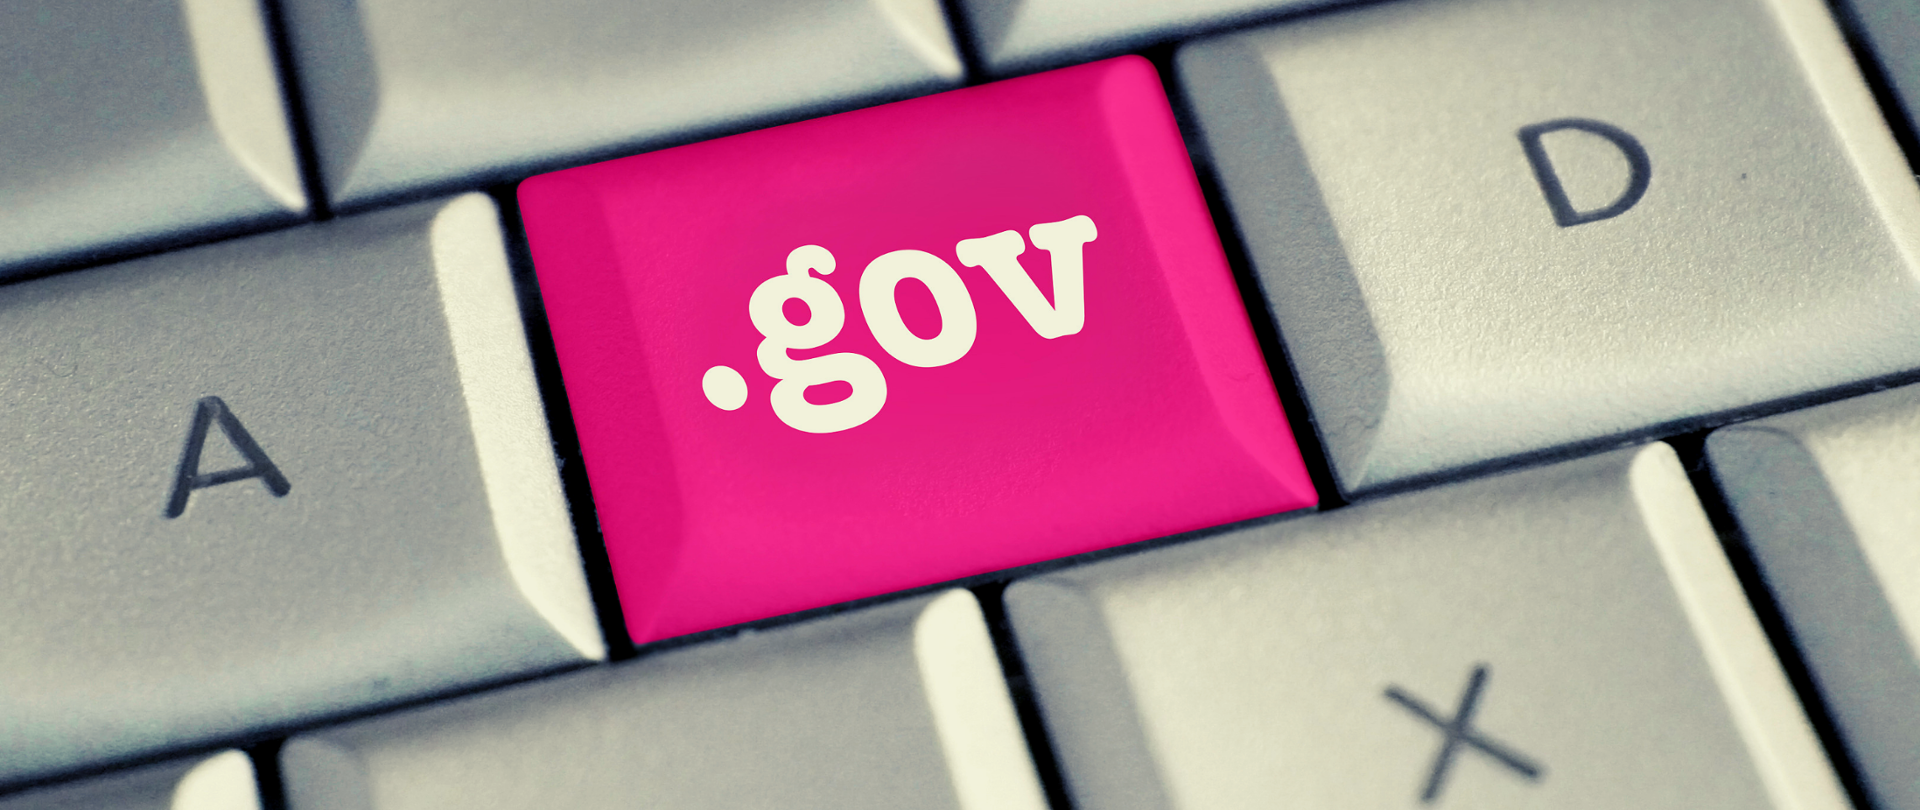 Biała klawiatura z różowym przyciskiem z napisem gov